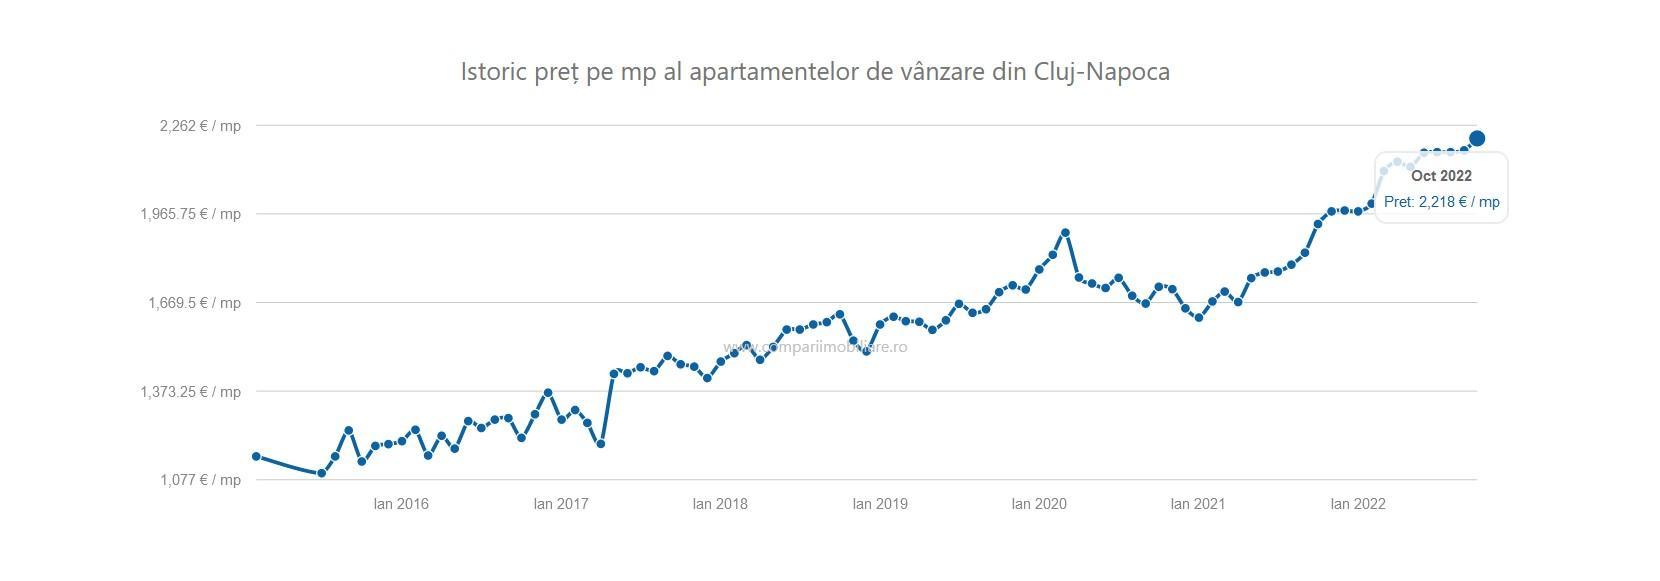 Apartamentele din Cluj s-au scumpit în octombrie. Mănășturul si Floreștiul, cele mai căutate zone. Cât e mp?